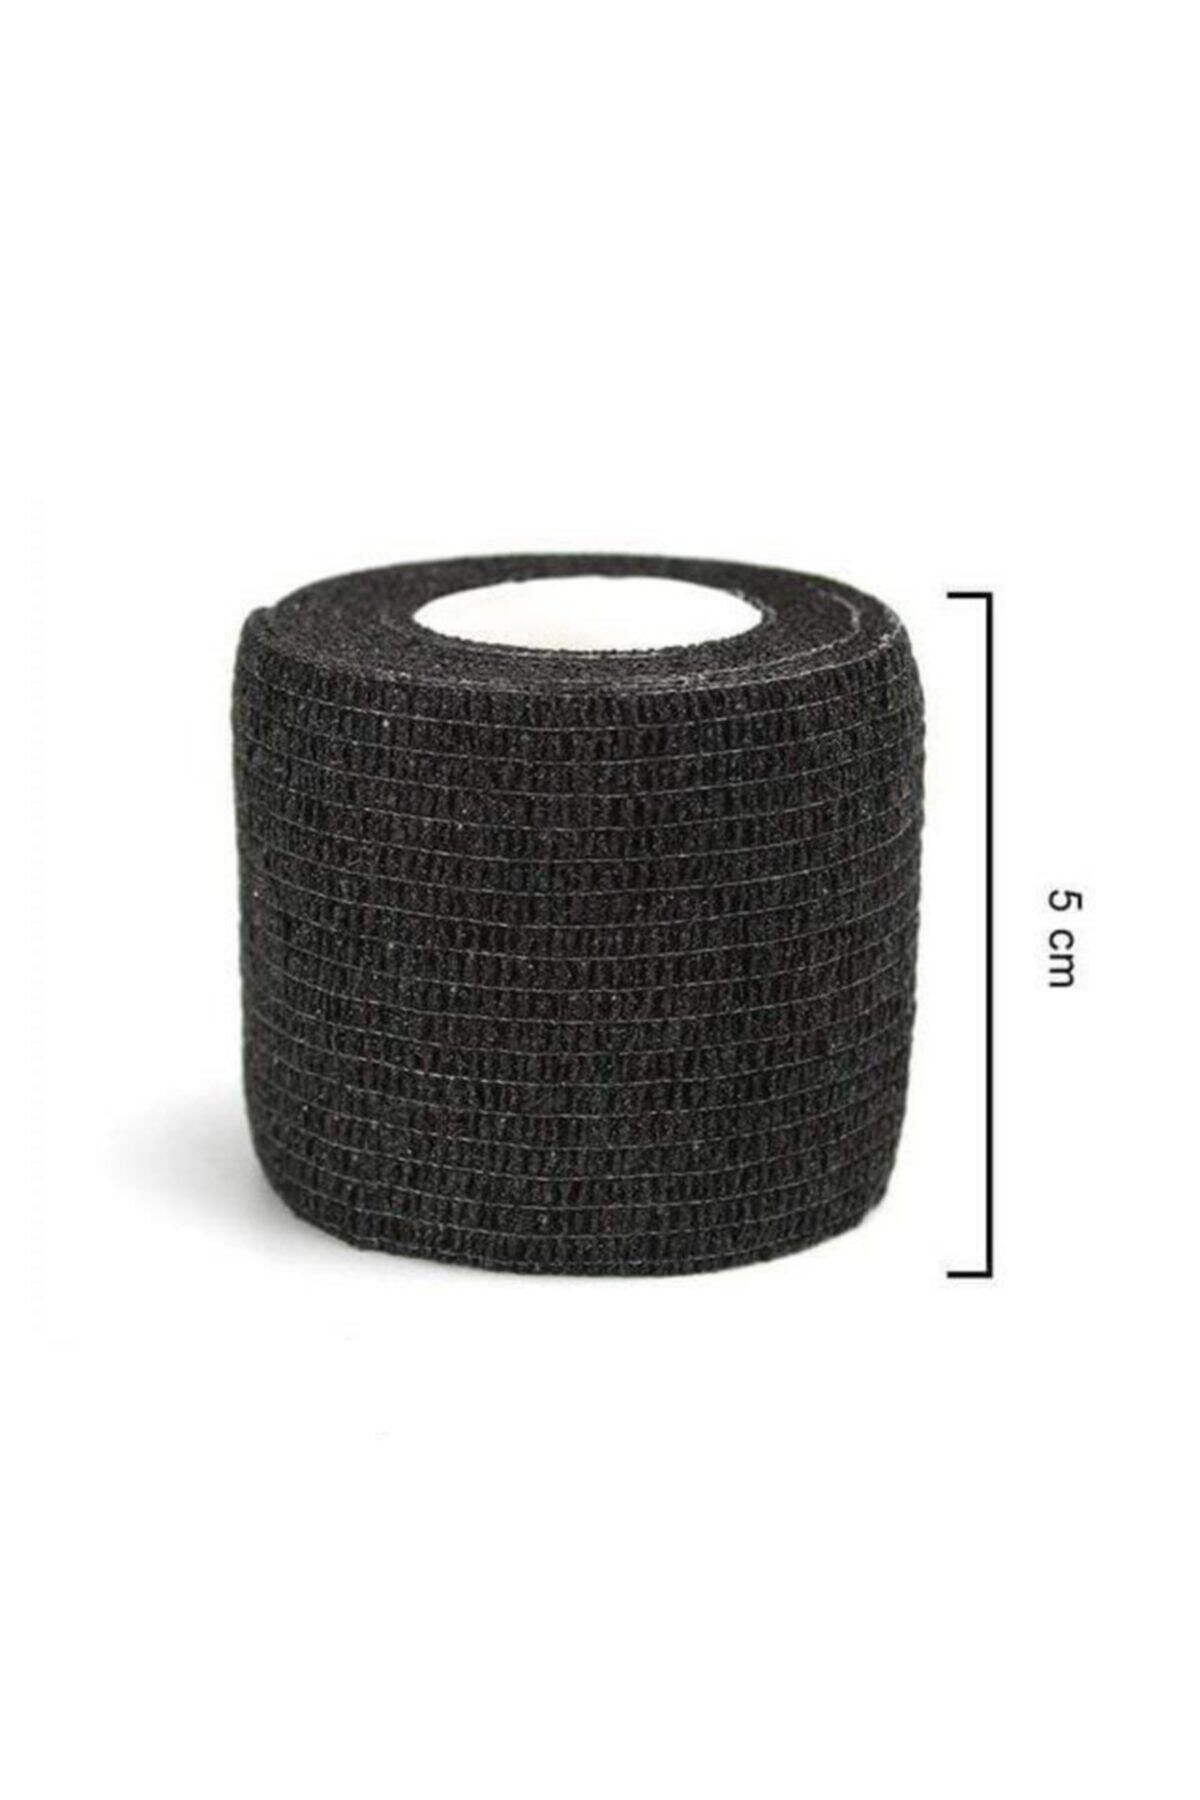 Iron Siyah Kendinden Yapışkanlı Bandaj Koban 5cmx4.5m